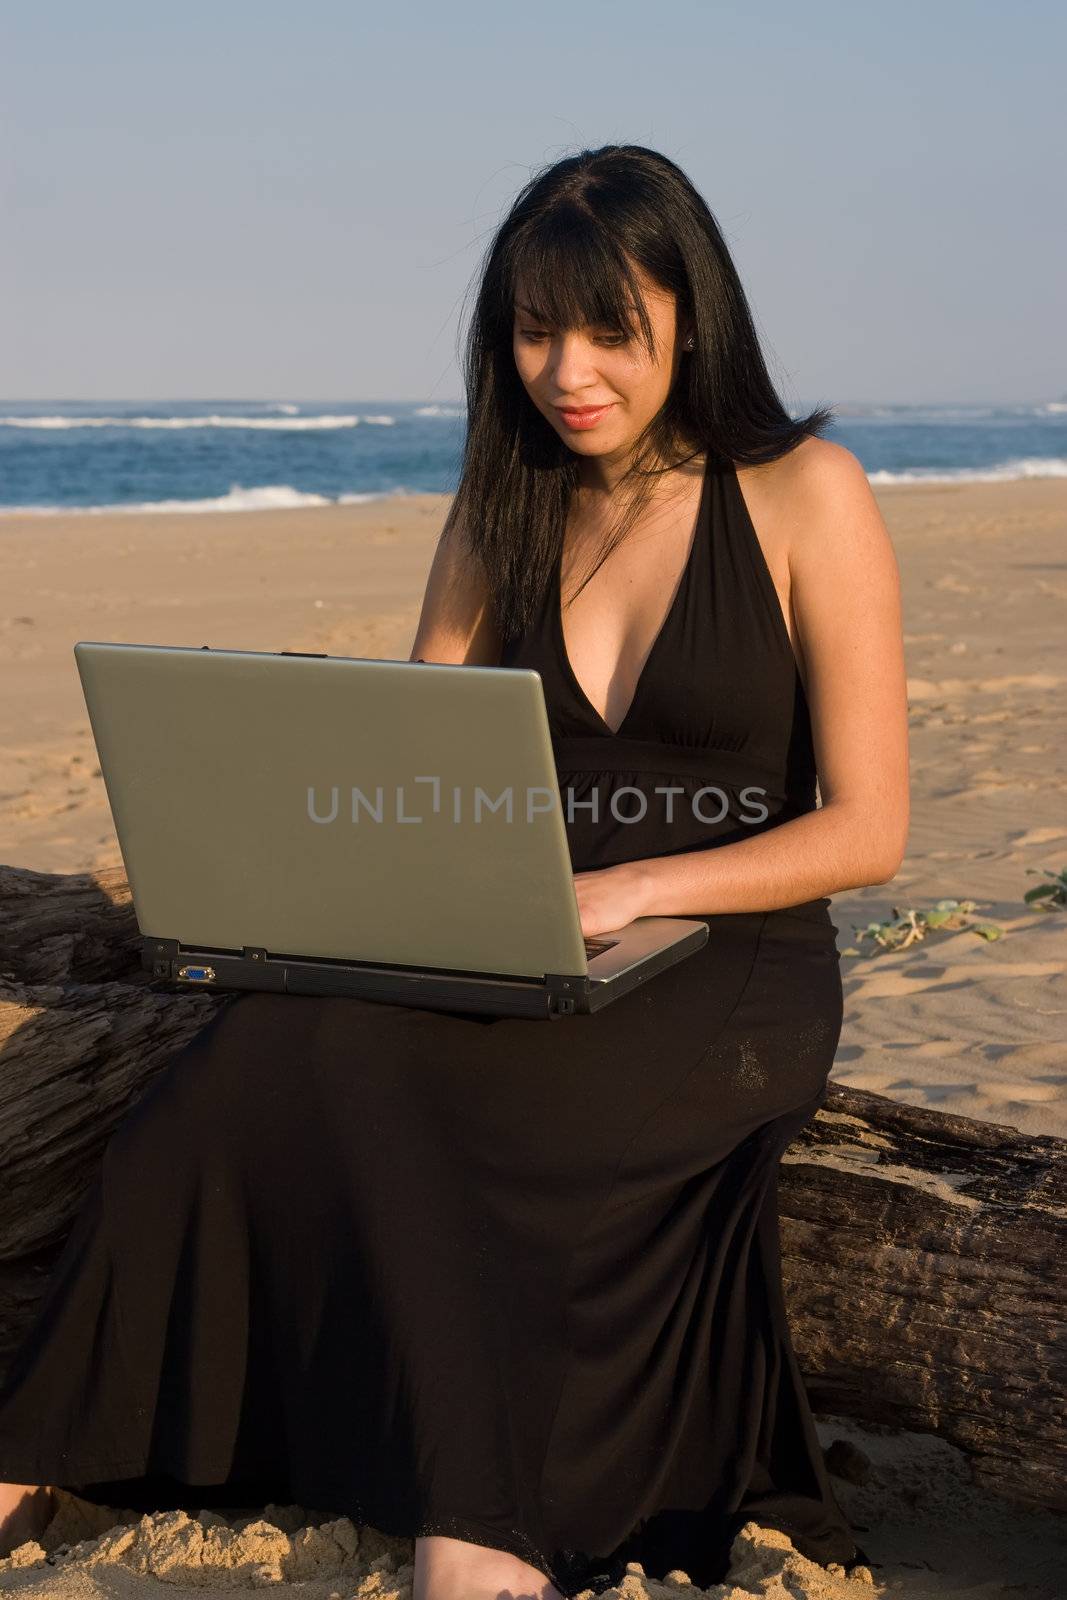 Laptop Lady by nightowlza